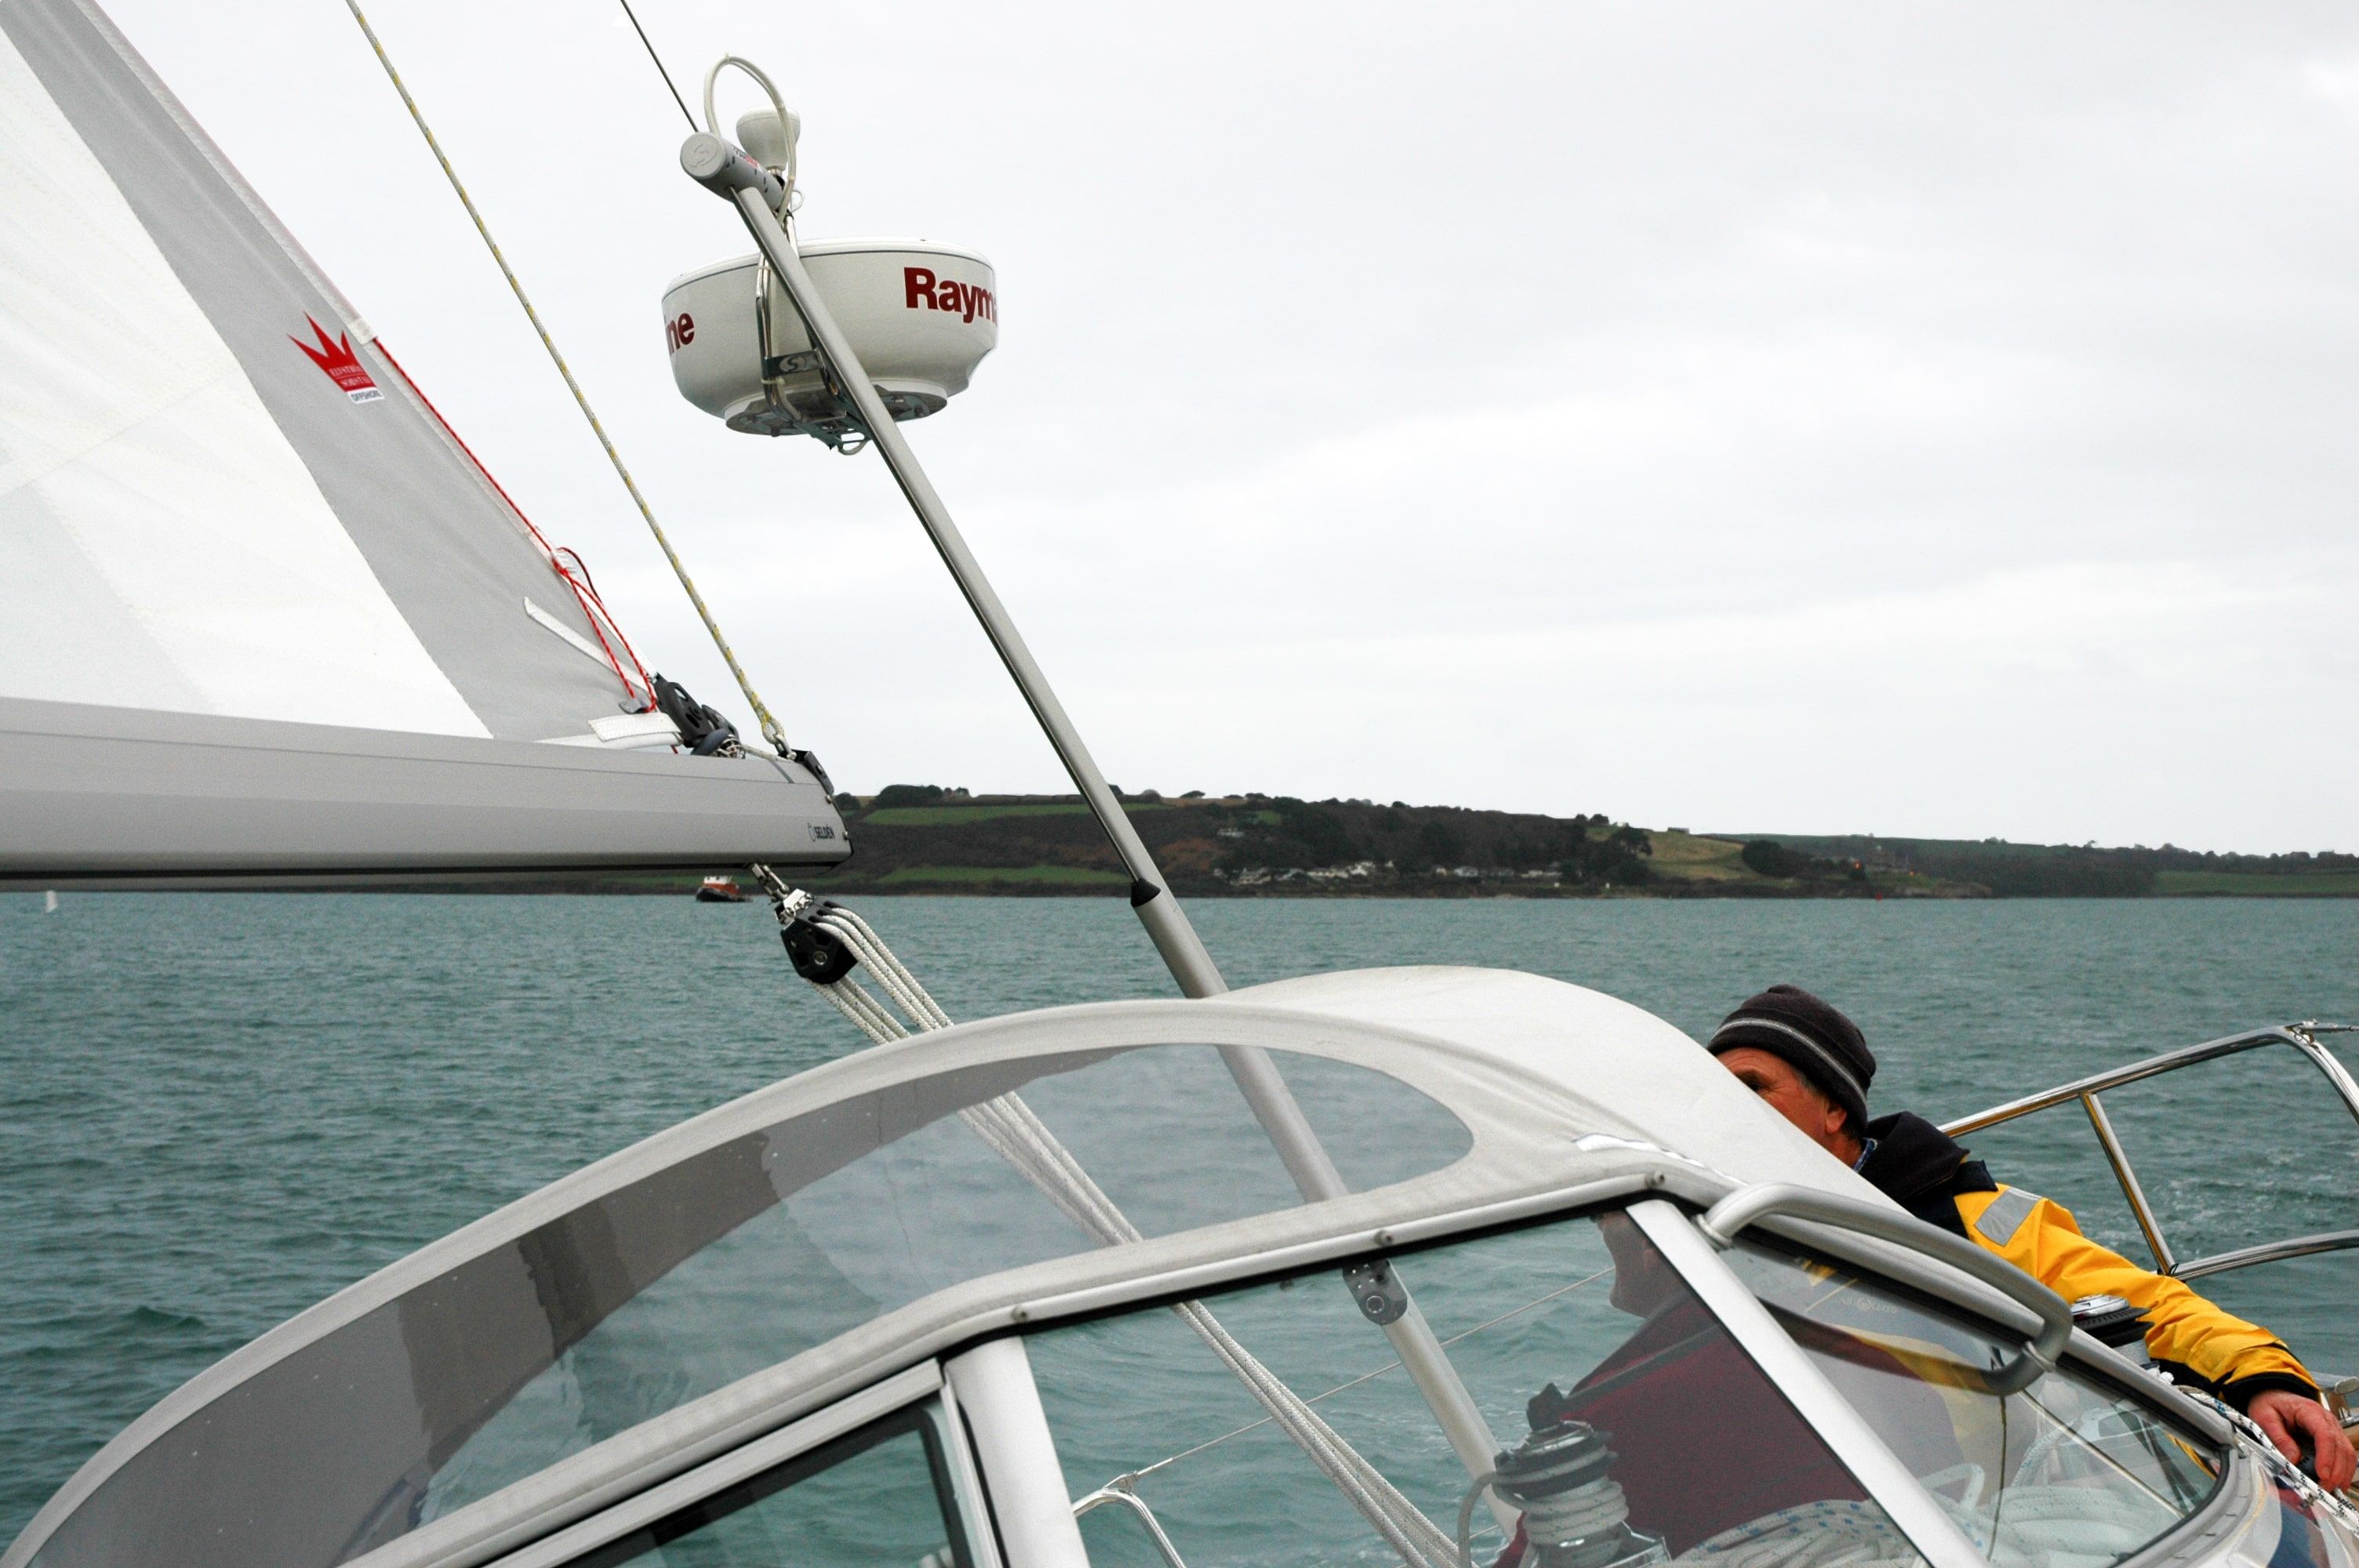 sailboat backstay antenna